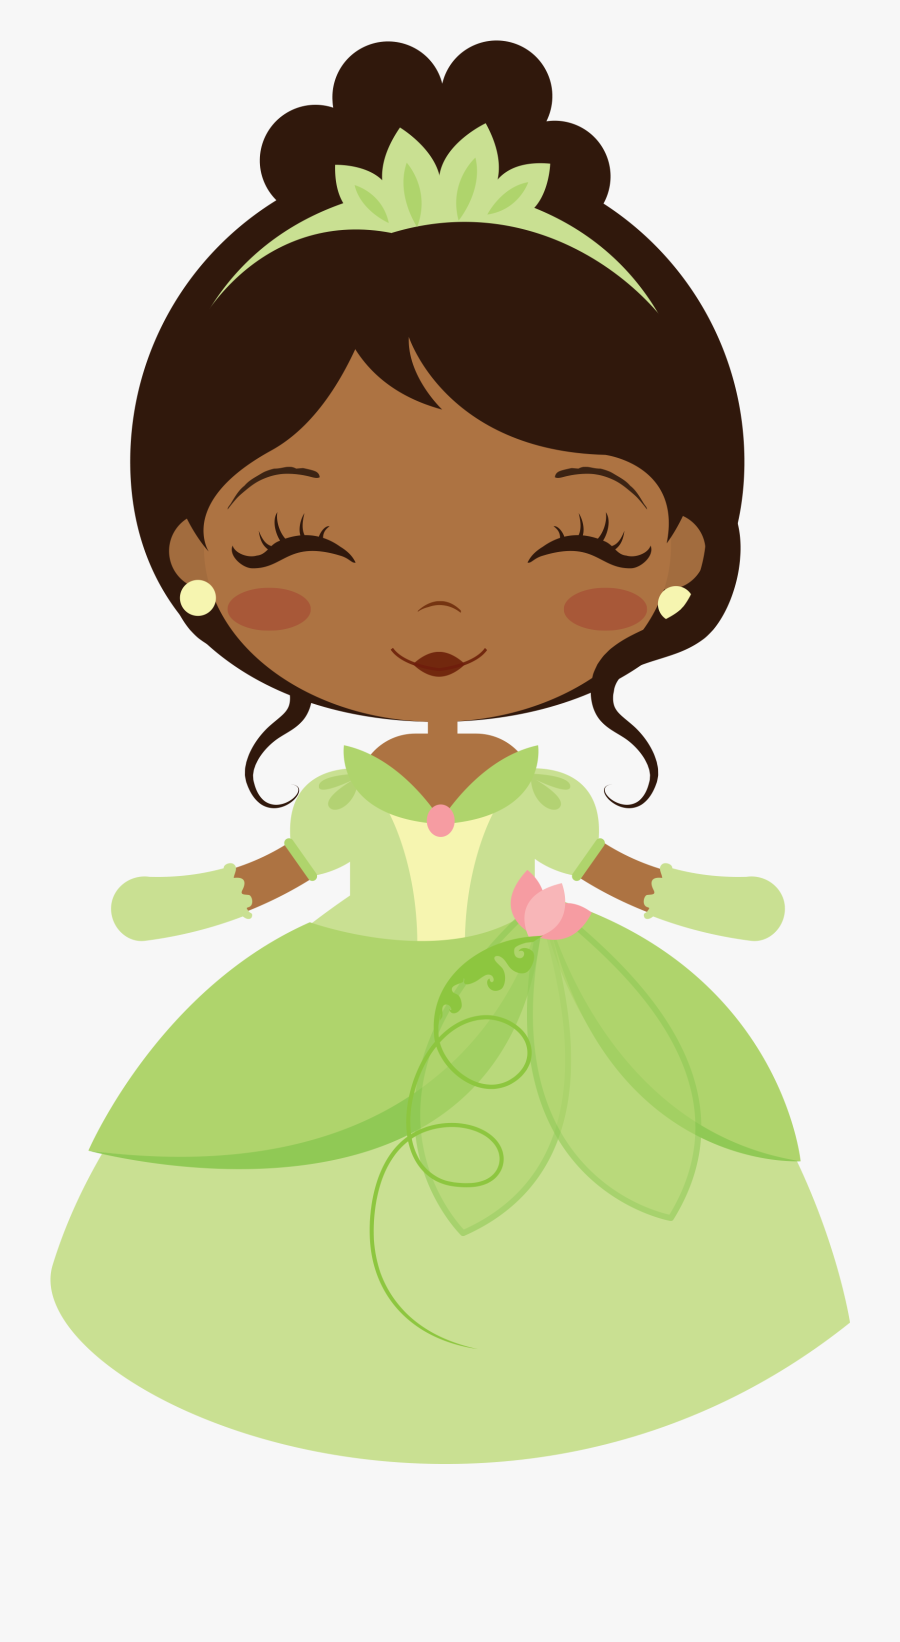 Witch Clipart Princess - Princesa Tiana Disney Baby, Transparent Clipart